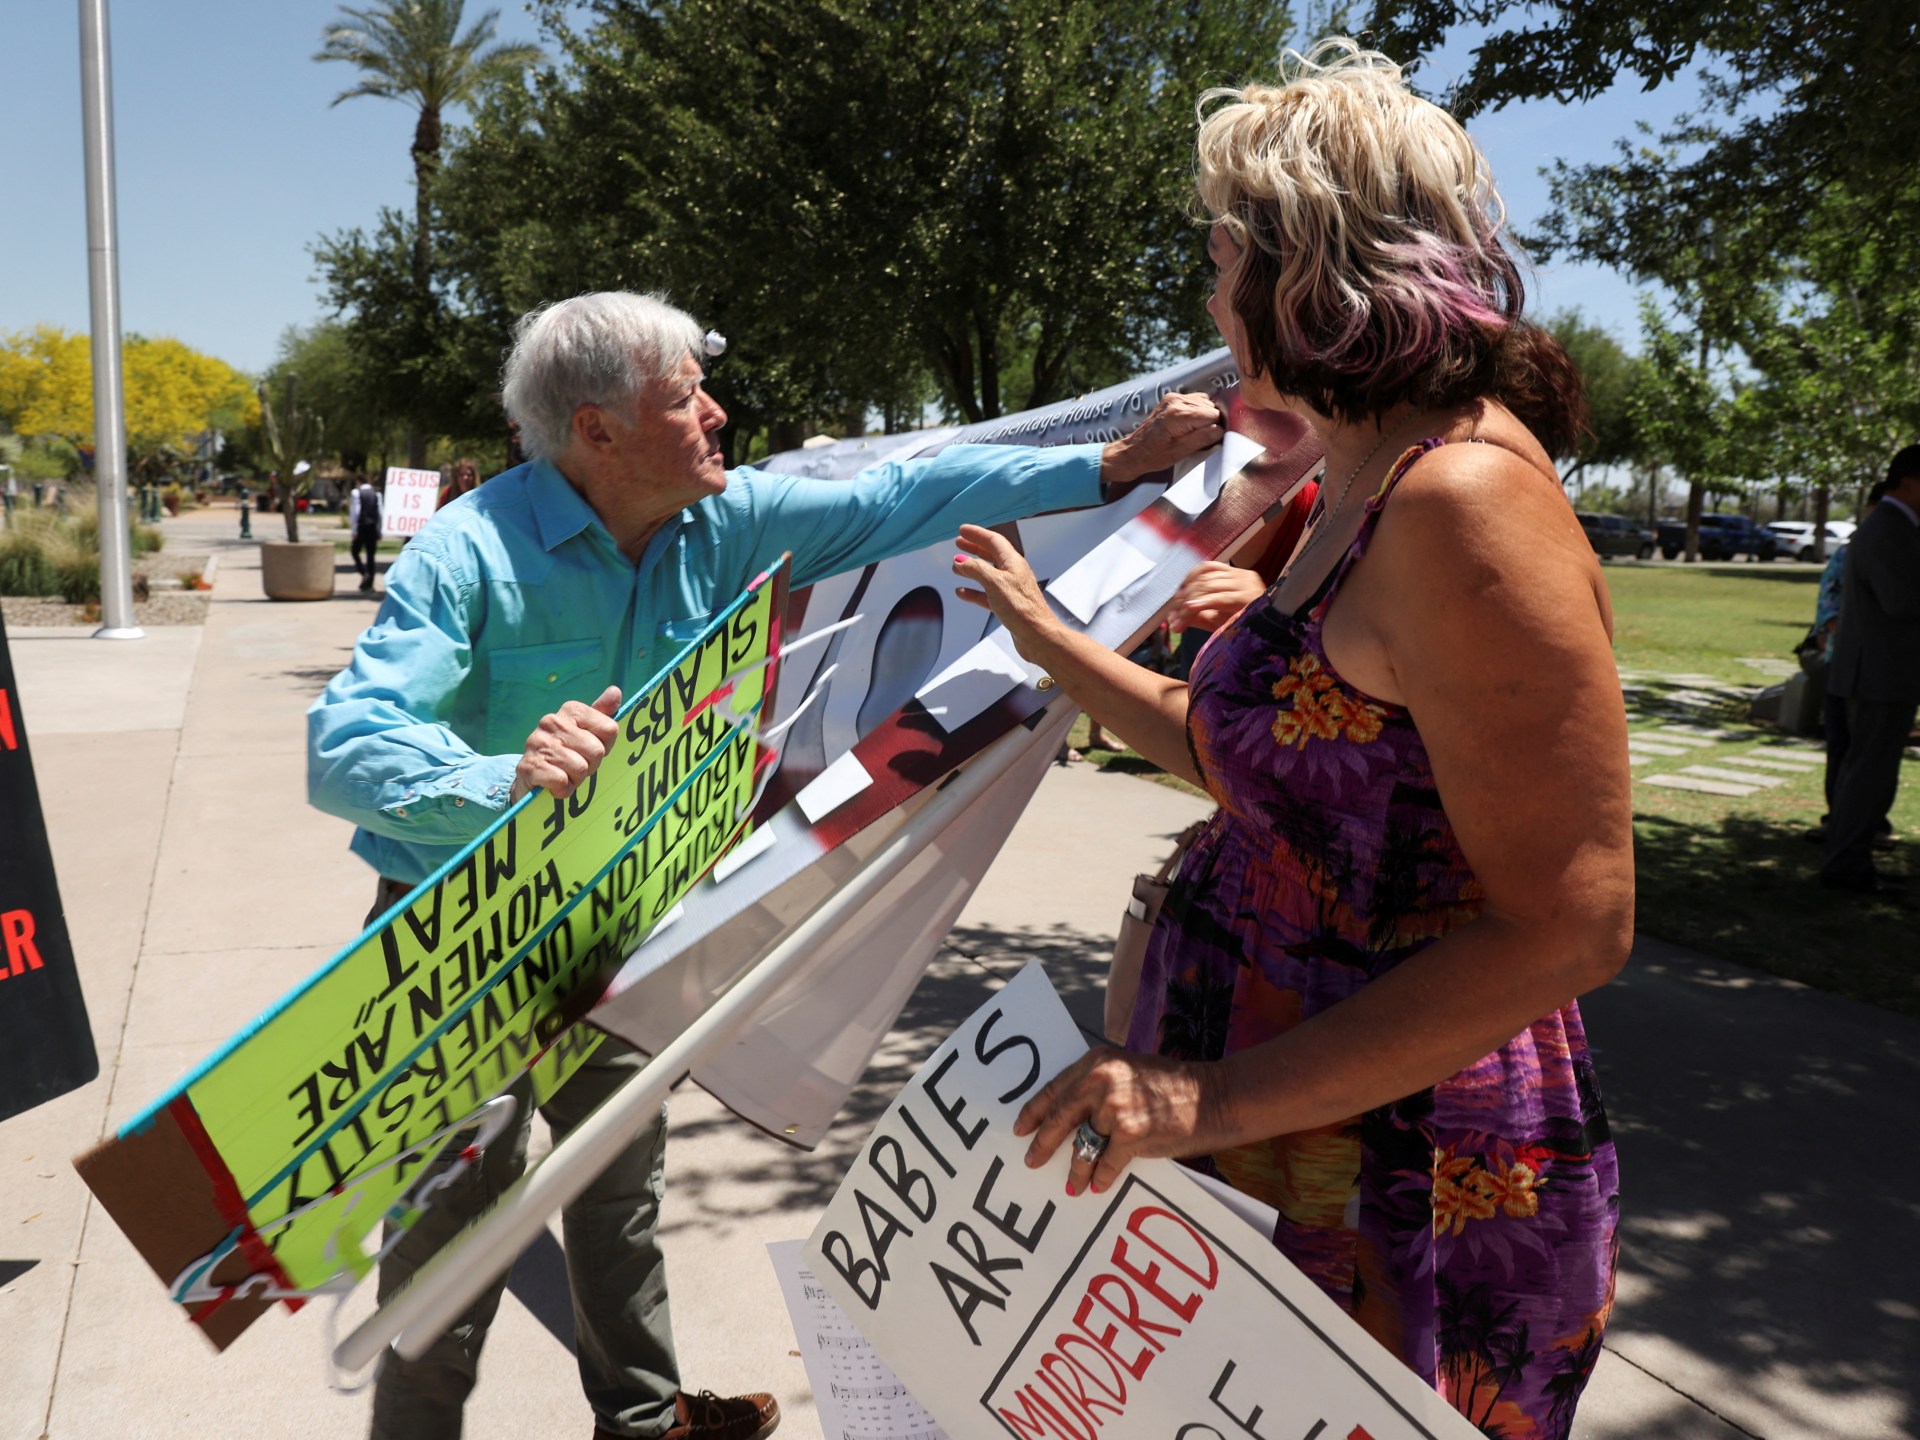 Arizona Senate repeals near-total 1864 abortion ban in divisive vote